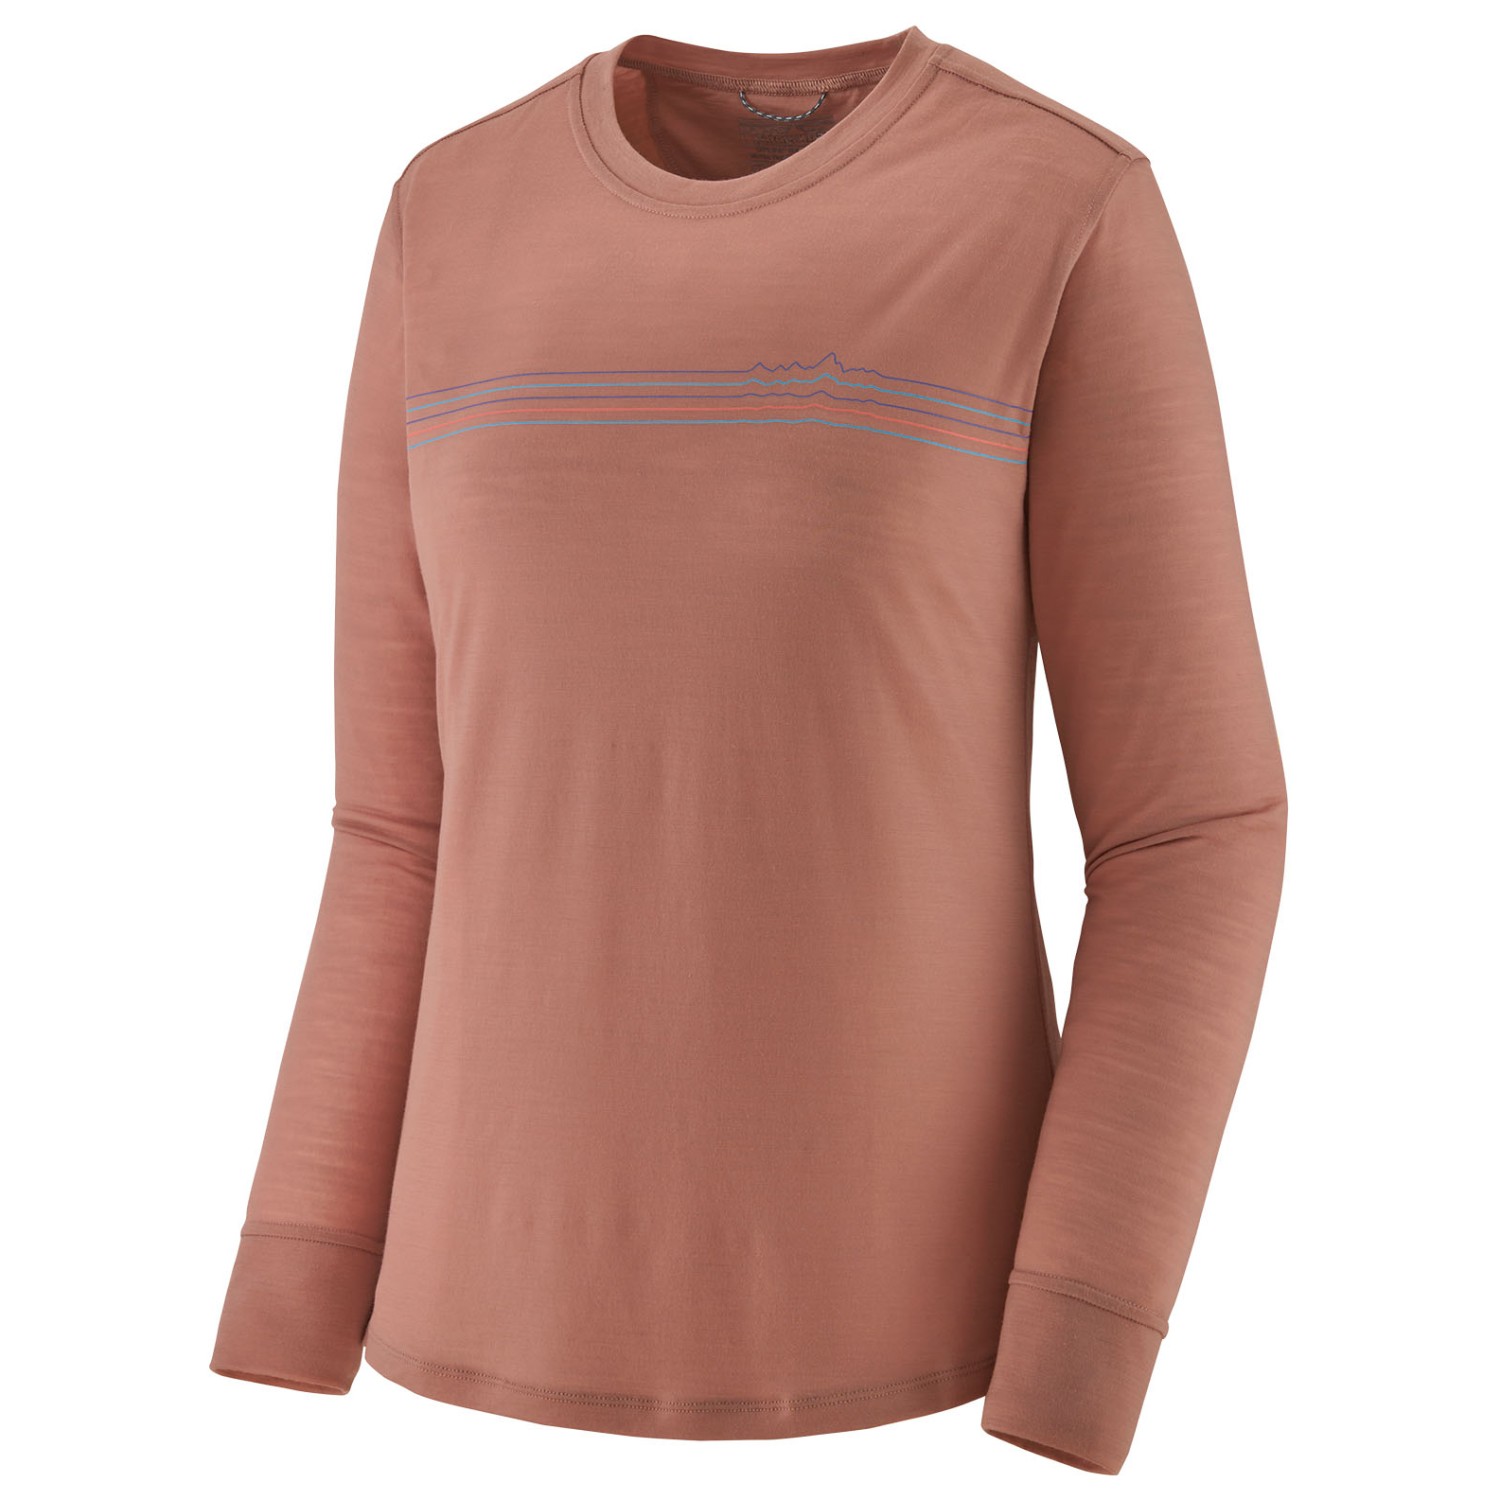 Рубашка из мериноса Patagonia Women's L/S Cap Cool Merino Graphic Shirt, цвет Fitz Roy Fader/Terra Pink